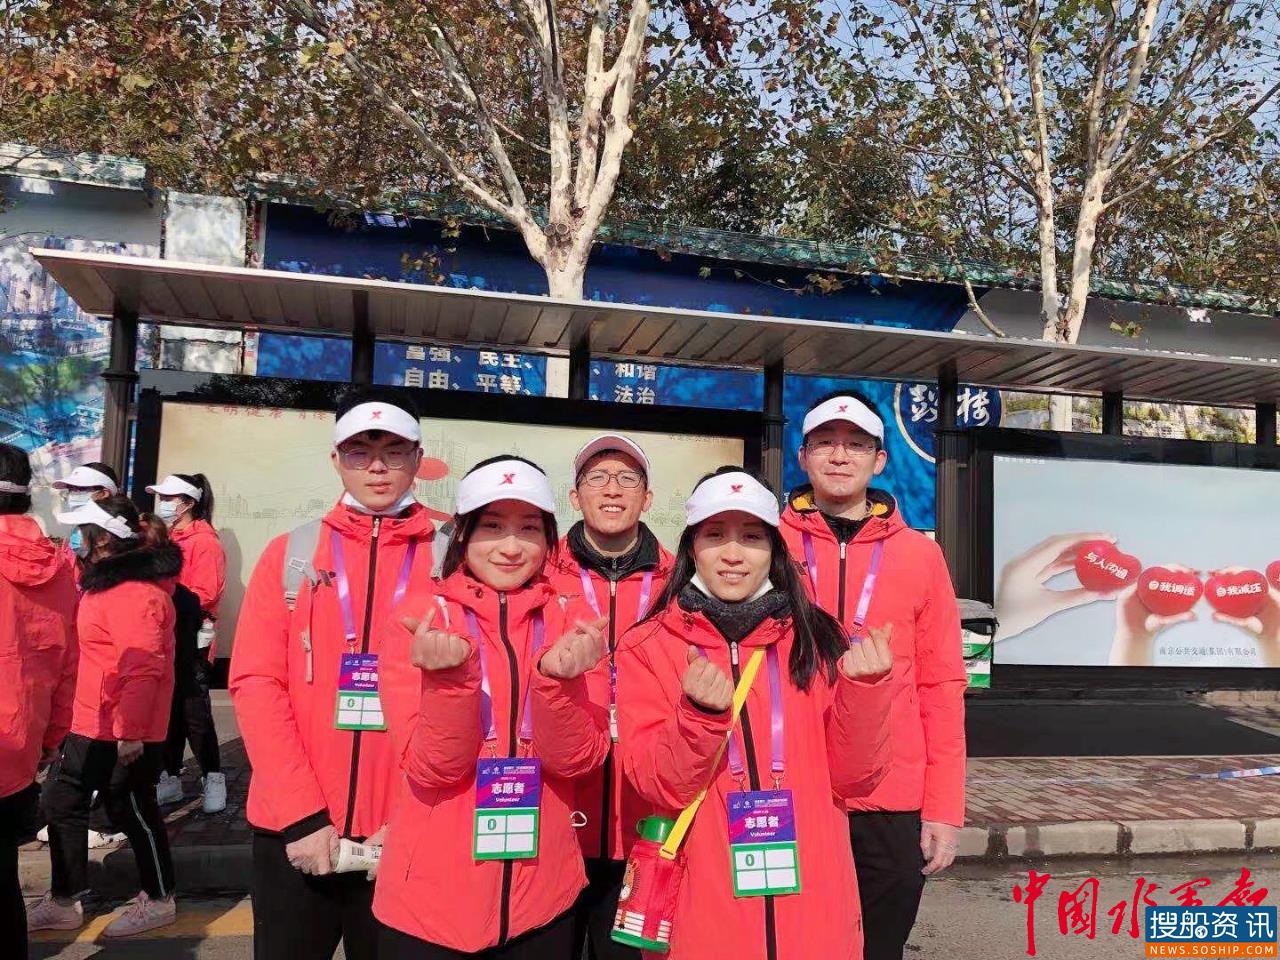 相约南马 青春飞扬  ——长江南京航道局青年志愿者为2020南京马拉松赛事保驾护航